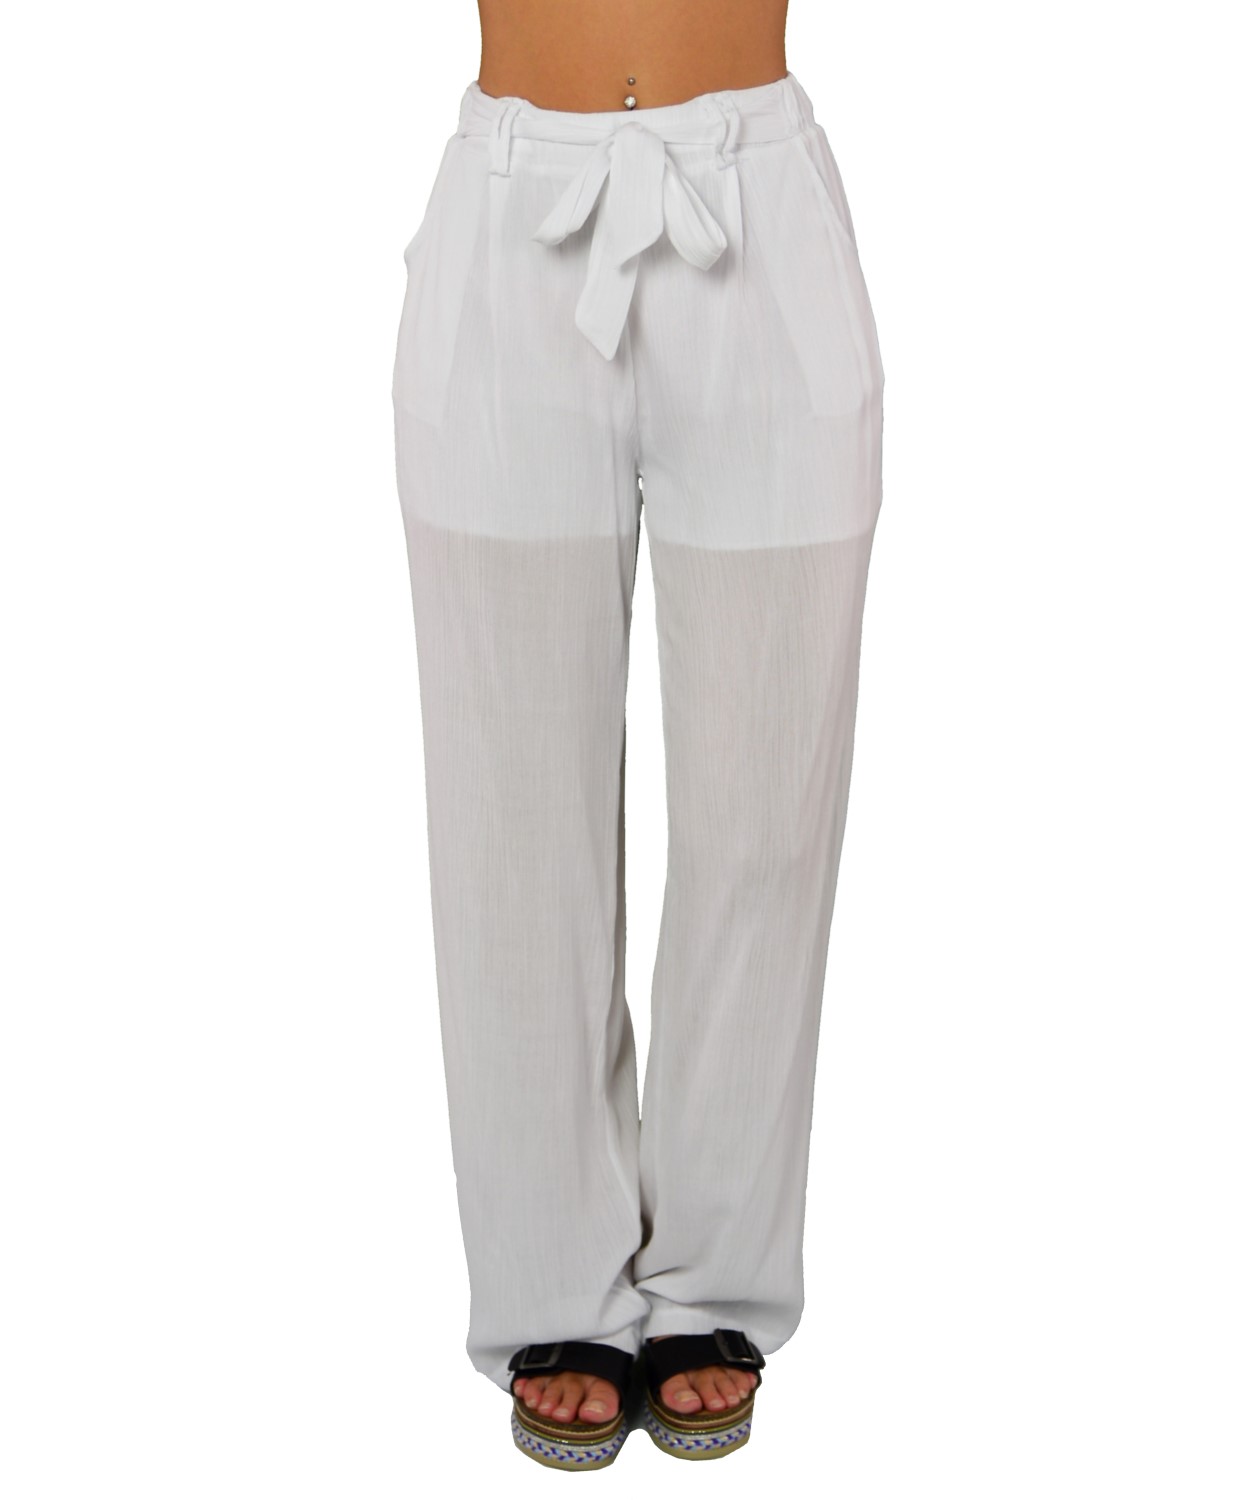 Γυναικεία παντελόνα υφασμάτινη λευκή με φιόγκο 11746688K